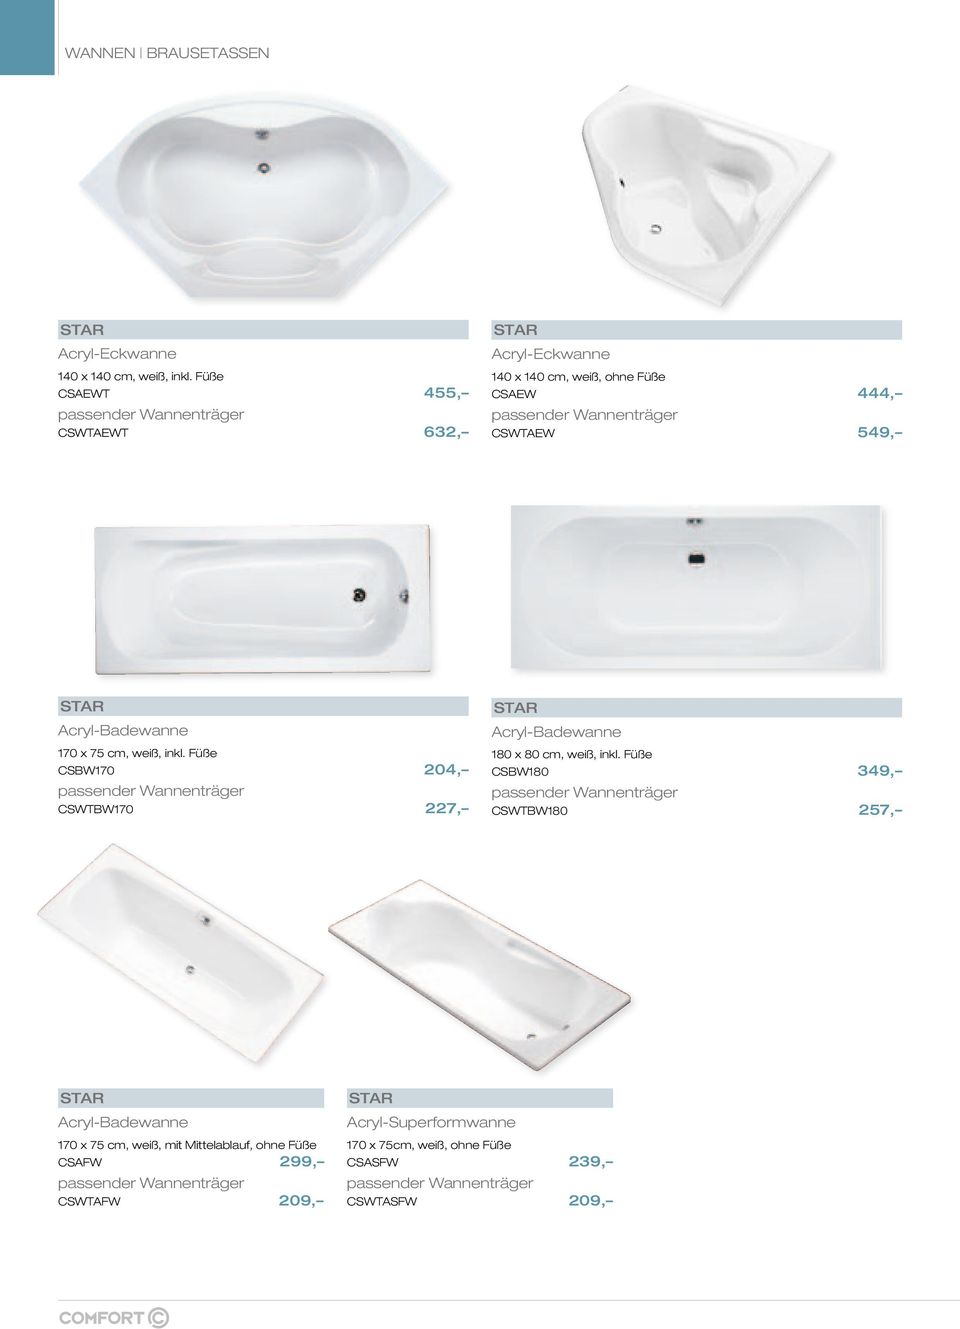 Acryl-Badewanne 170 x 75 cm, weiß, inkl. Füße CSBW170 204, passender Wannenträger CSWTBW170 227, Acryl-Badewanne 180 x 80 cm, weiß, inkl.